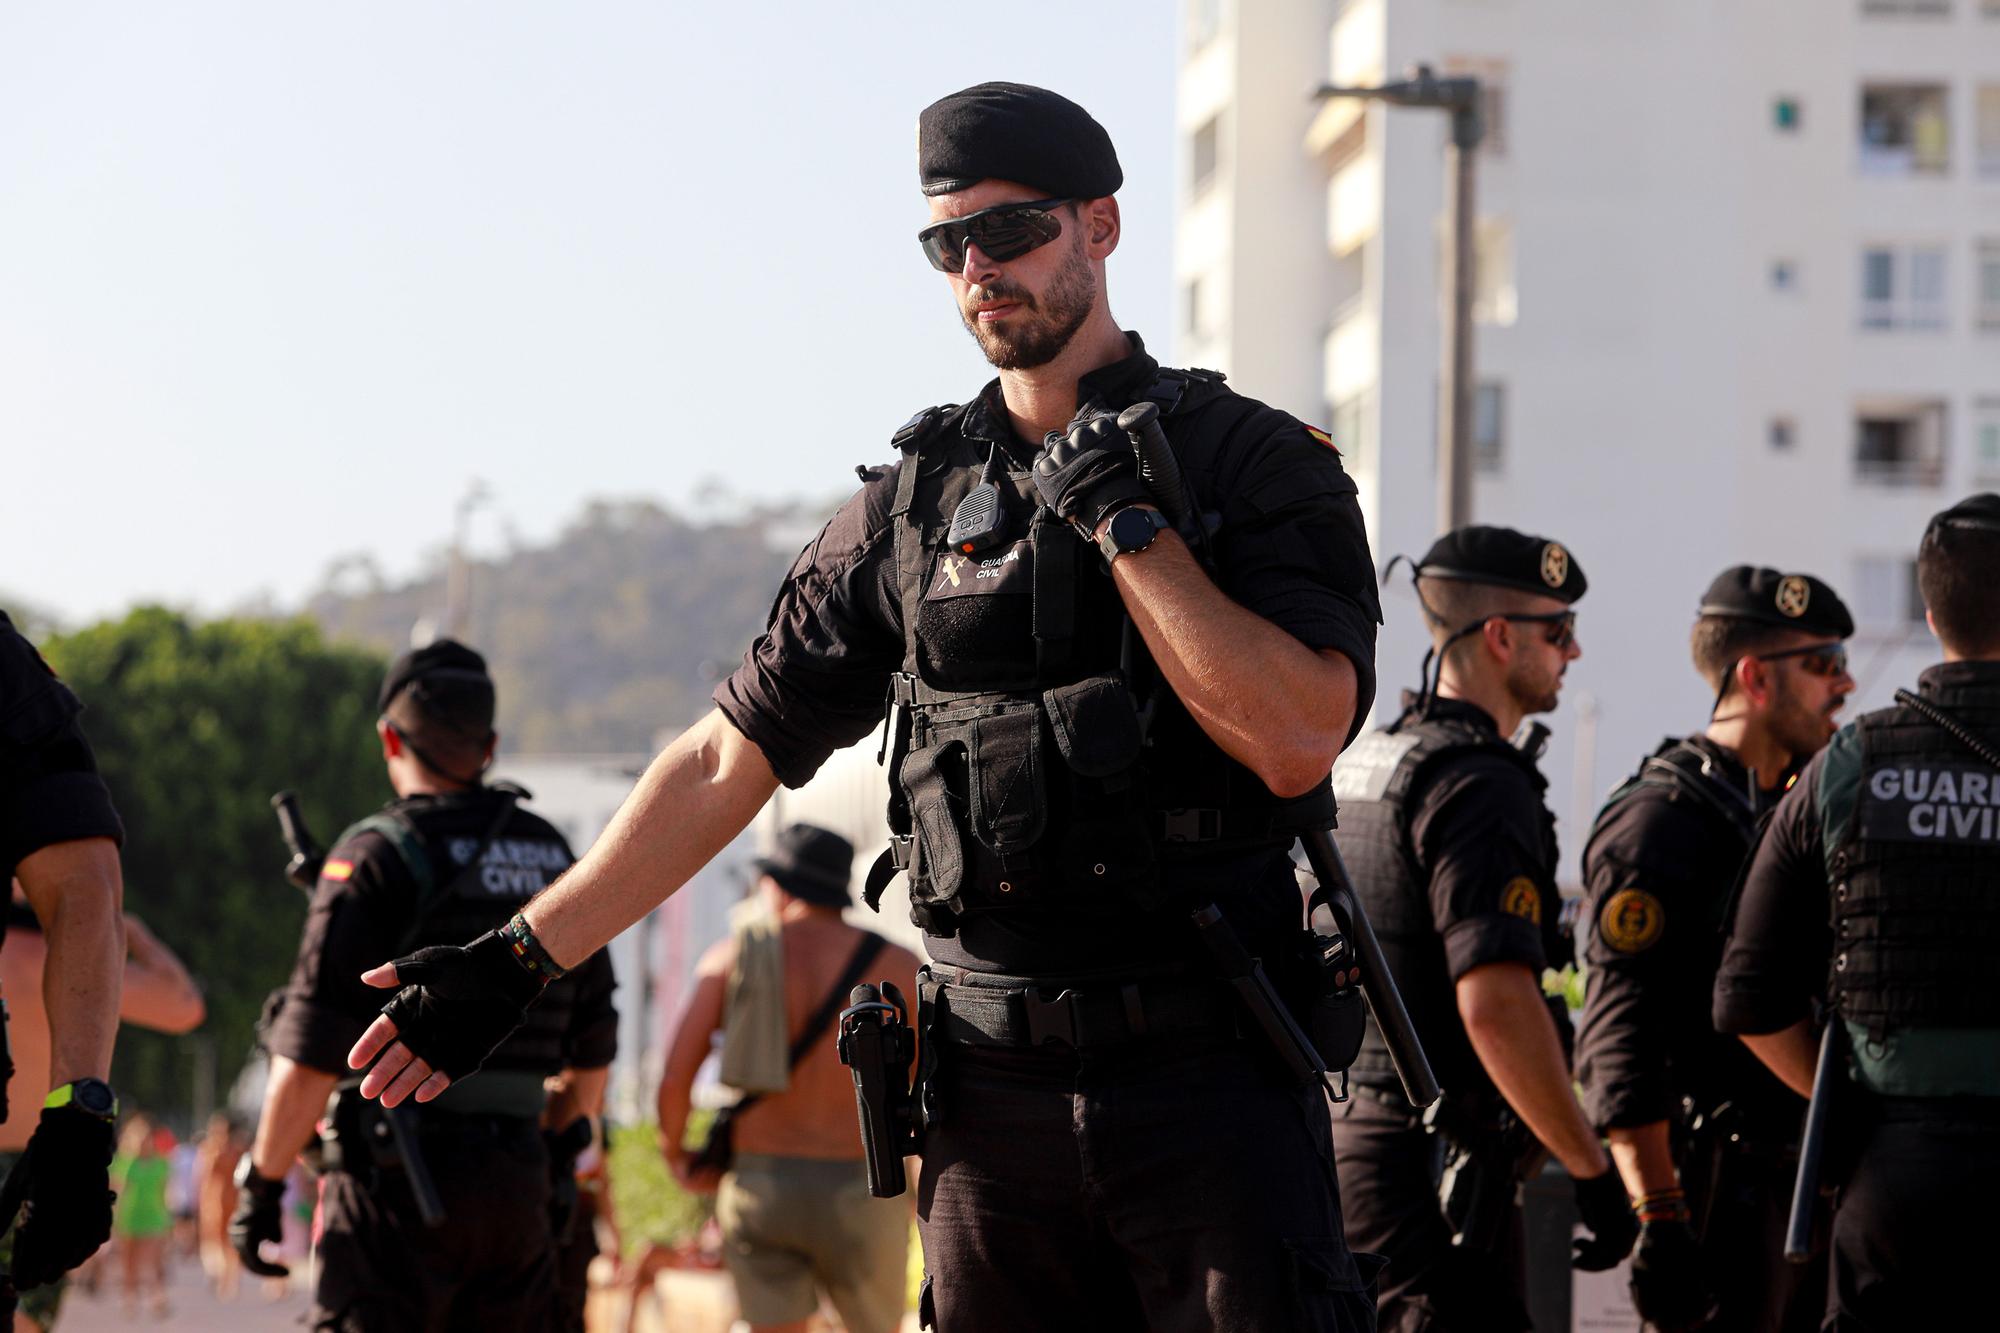 Galería de imágenes de la patrulla del Grupo de Acción Rápida de la Guardia Civil en Sant Antoni